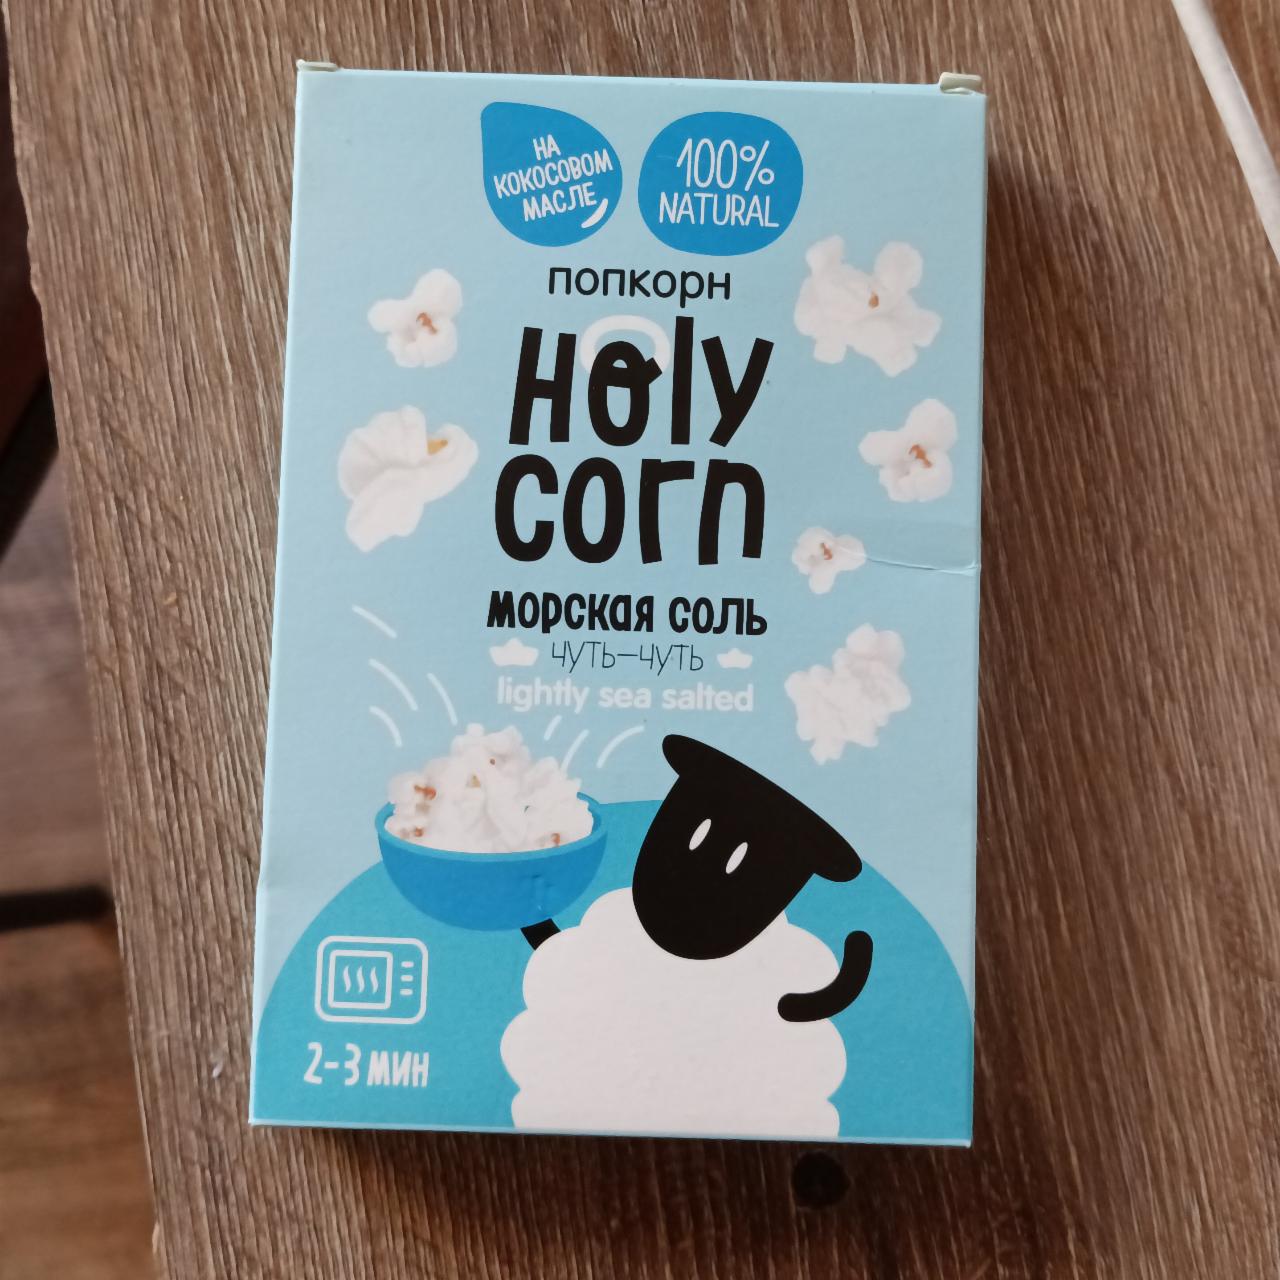 Фото - попкорн морская соль чуть-чуть Holy corn